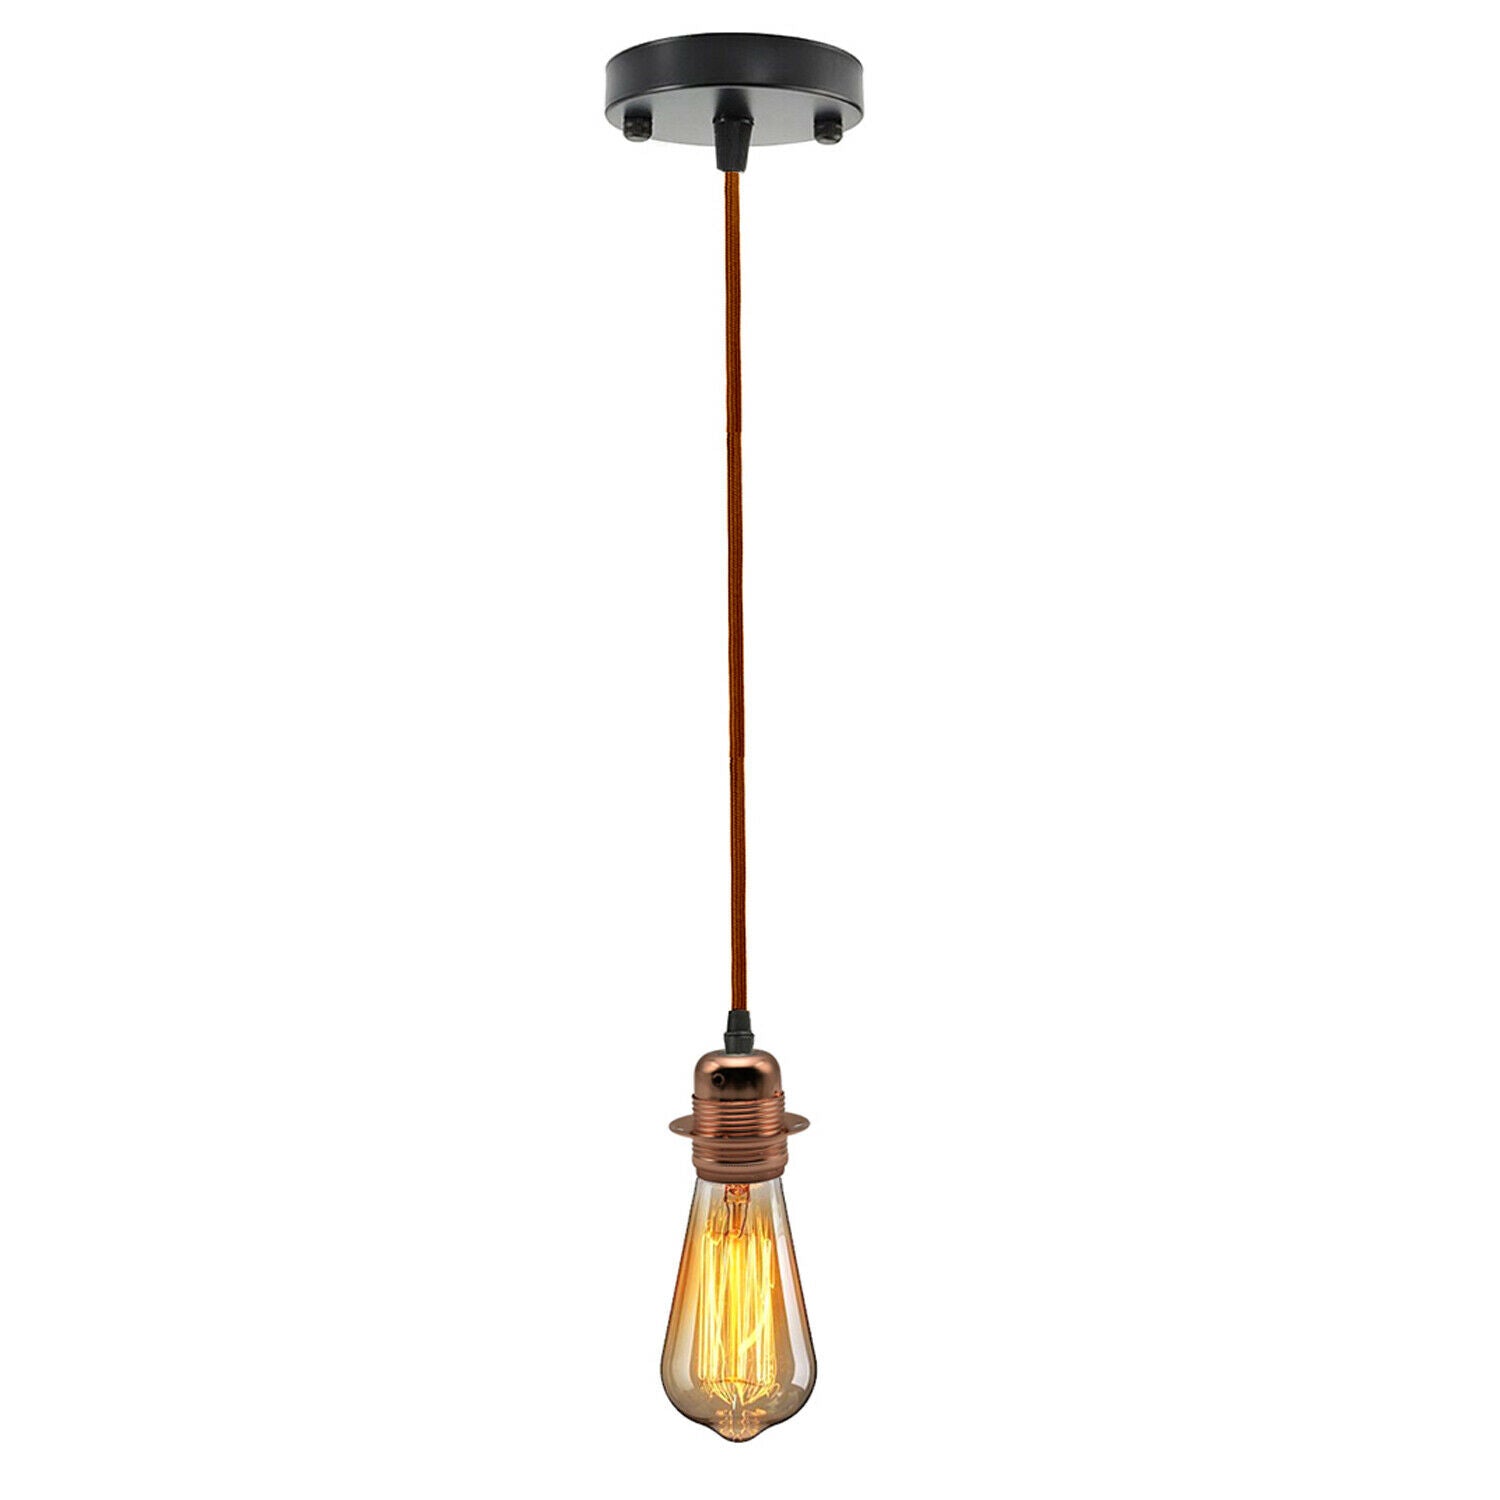 Brown Ceiling Rose Fabric Flex Hanging Pendant Light Lamp Holder FREE Bulb Fitting Lighting Kit~2334 - LEDSone UK Ltd